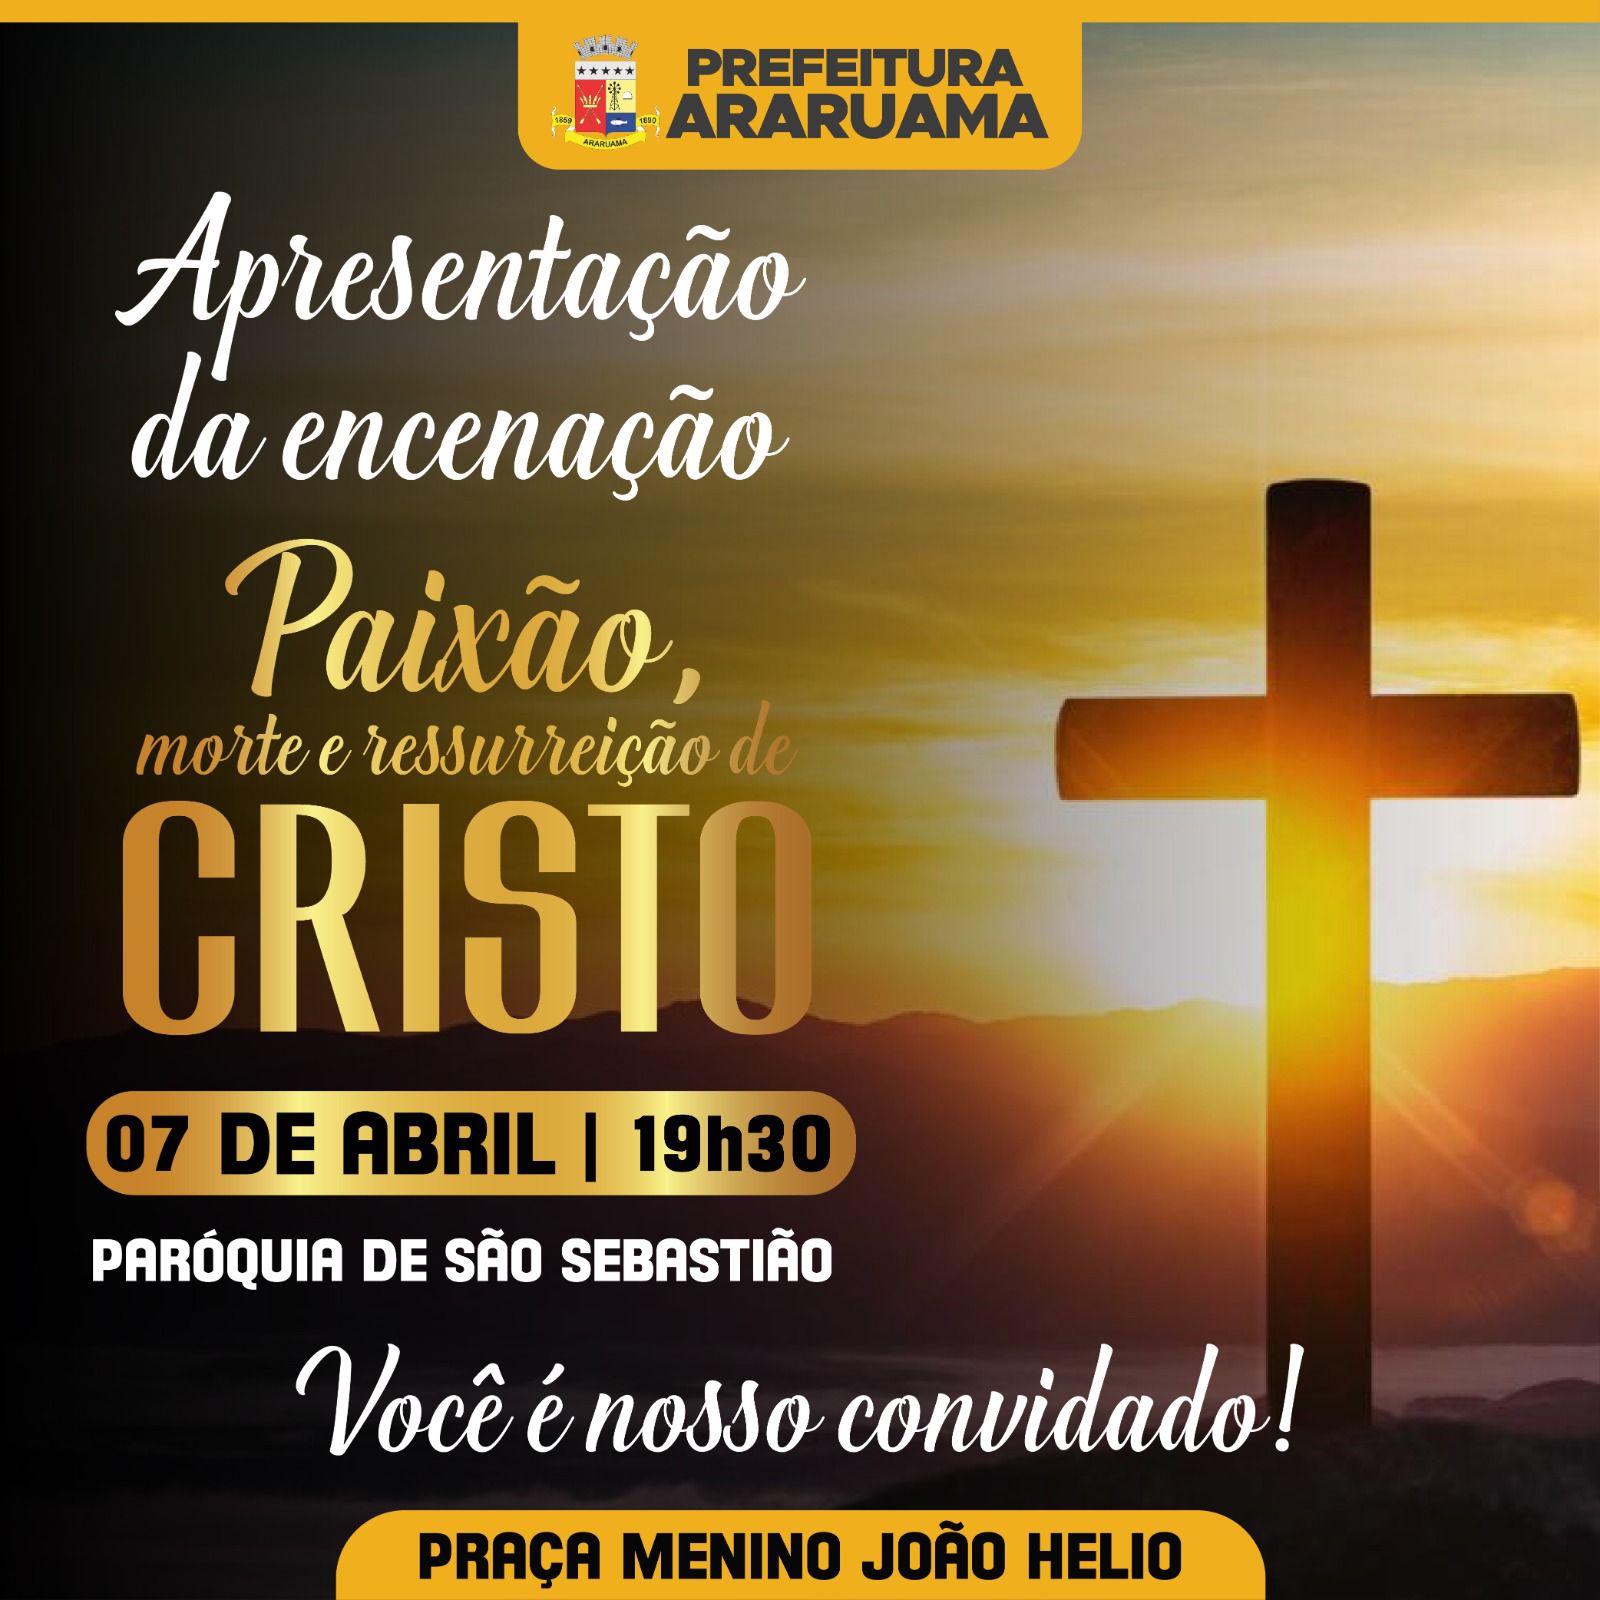 Prefeitura de Araruama e a paróquia São Sebastião vão realizar a tradicional “Encenação : Paixão, Morte e Ressurreição de Cristo”